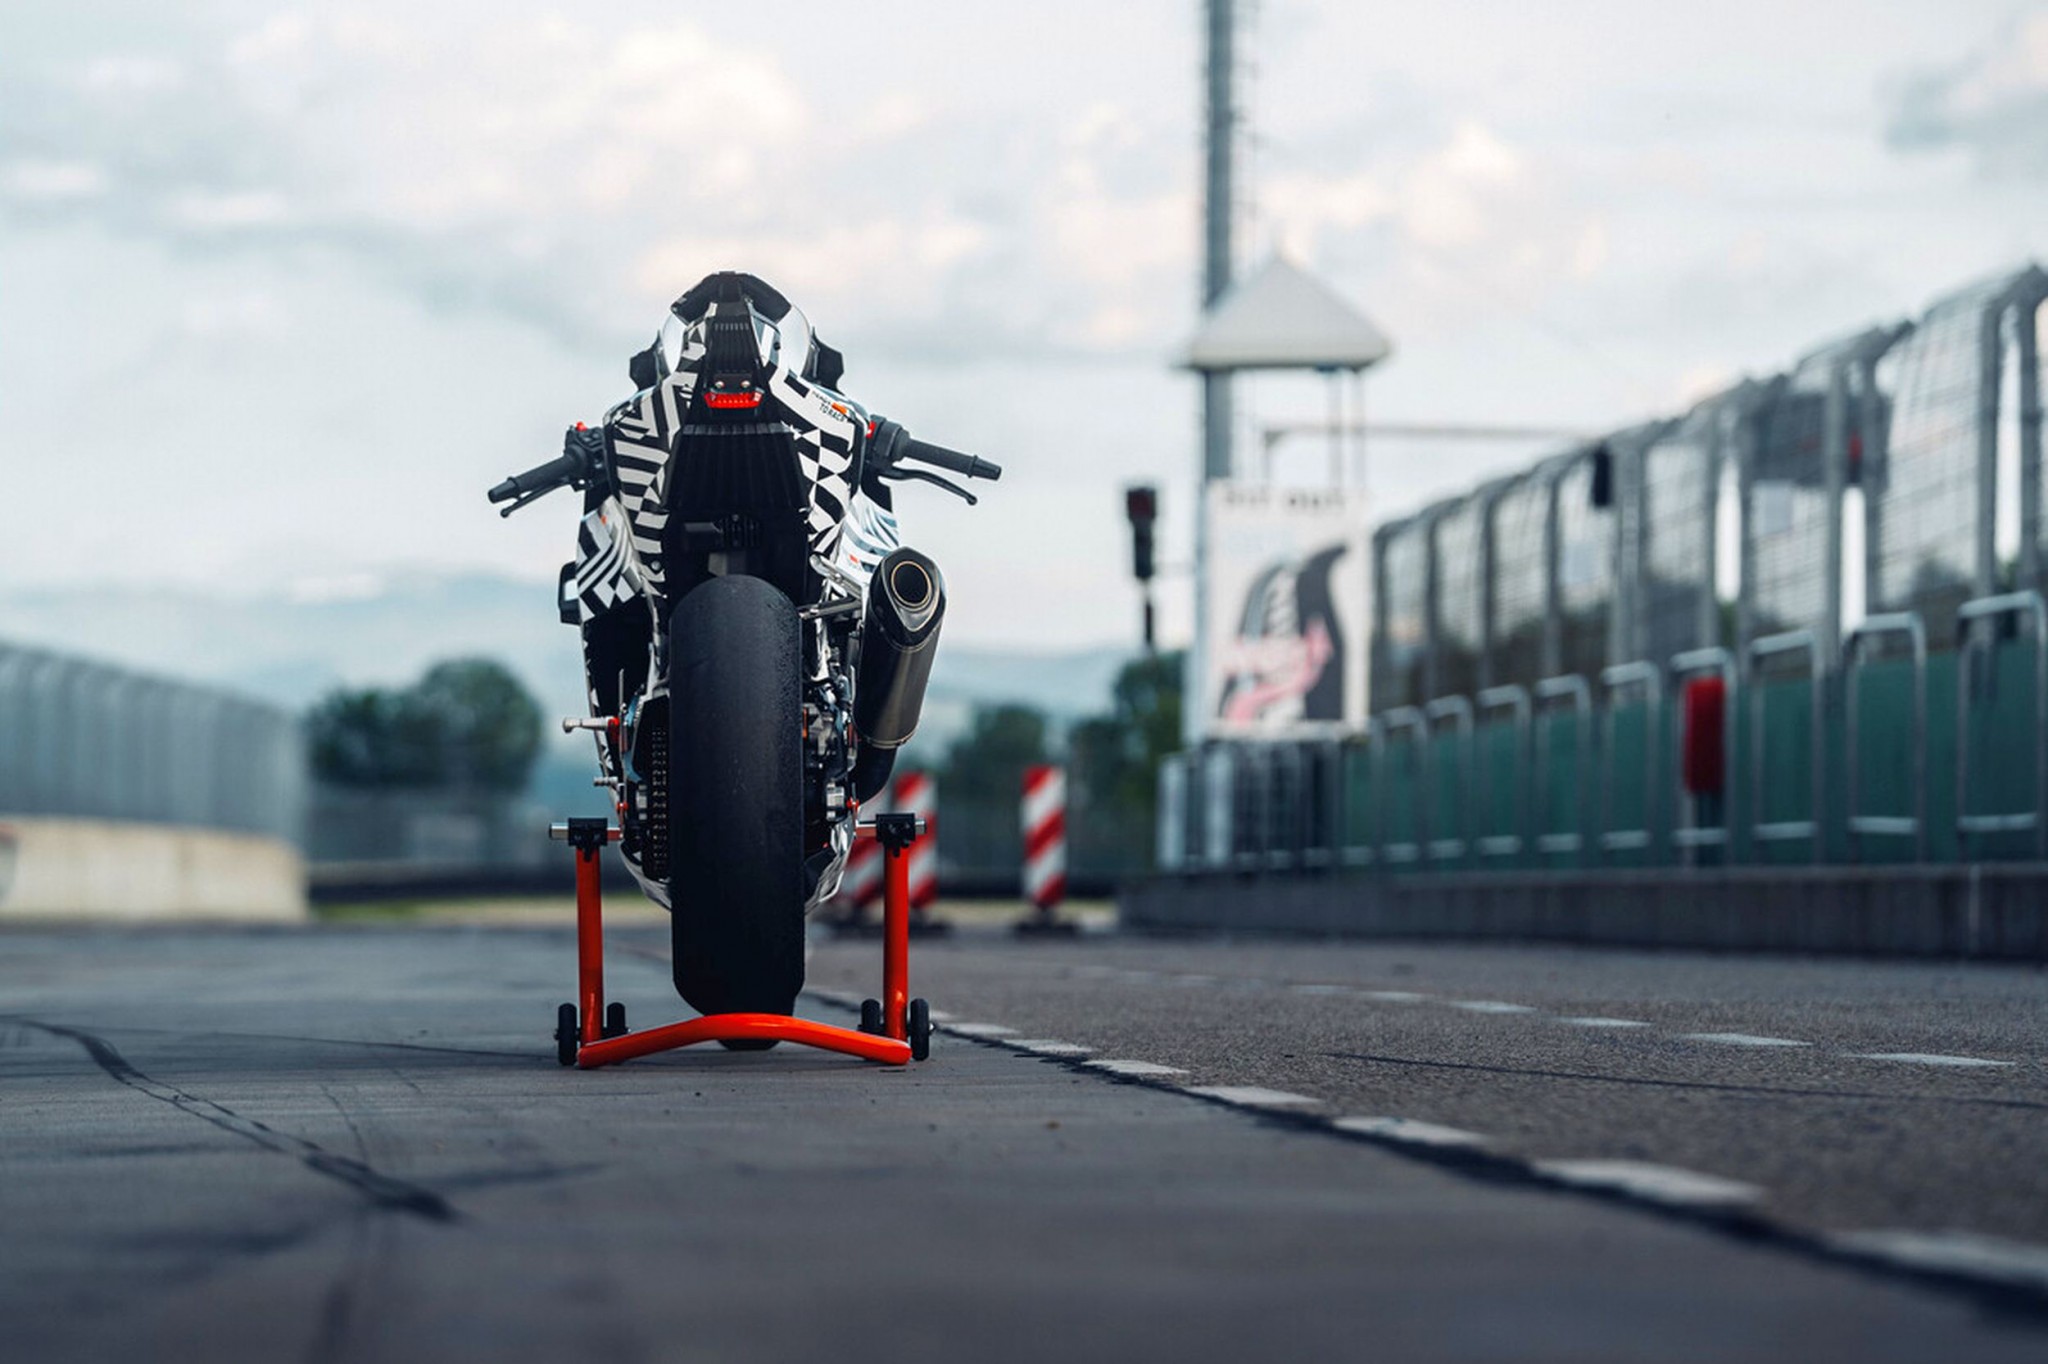 KTM 990 RC R - finalmente a moto desportiva puro-sangue para a estrada! - Imagem 2